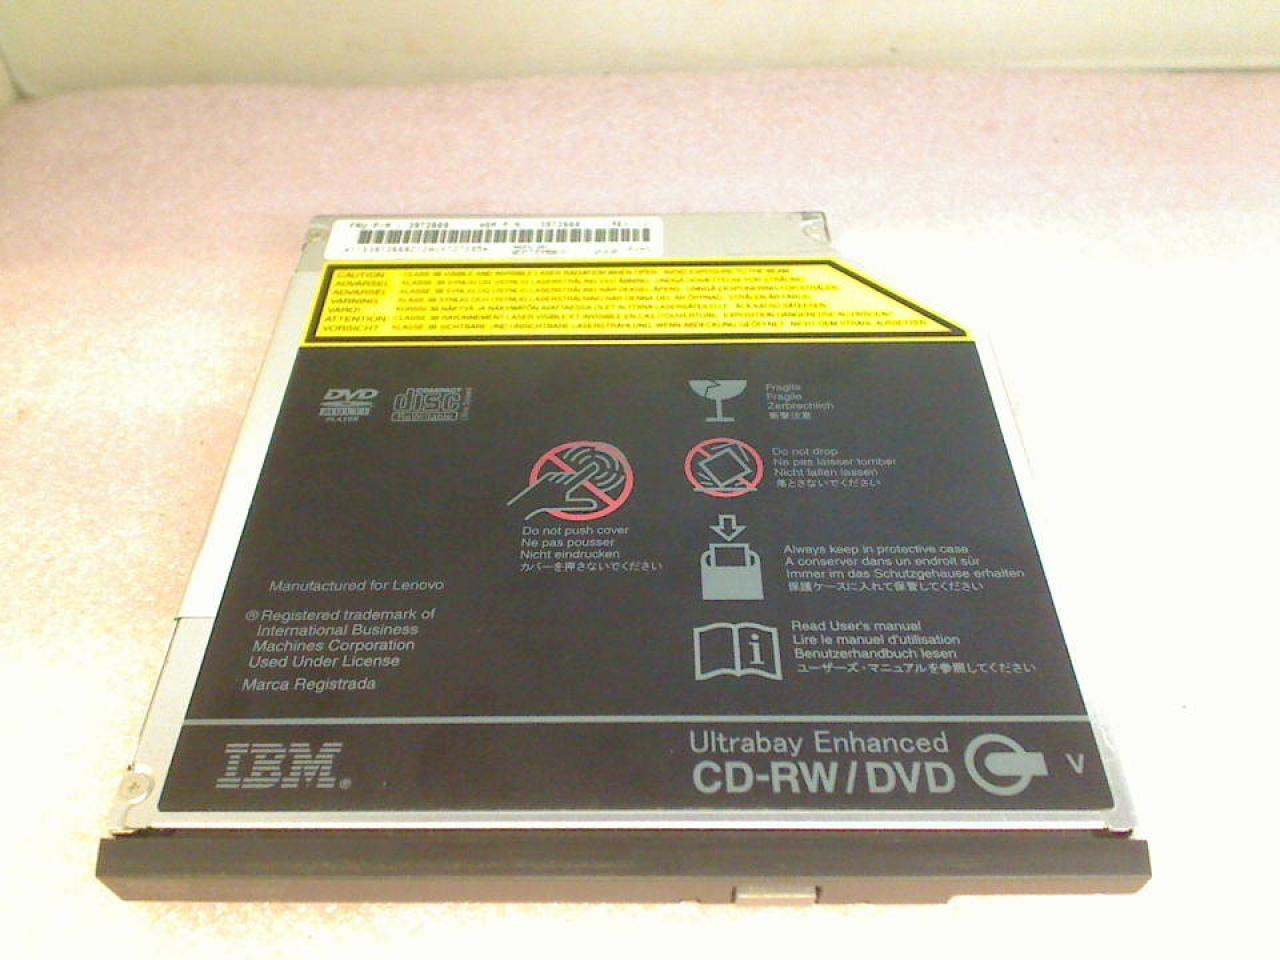 DVD-ROM Laufwerk Modul GCC-4244N IBM ThinkPad R50e 1834-47G